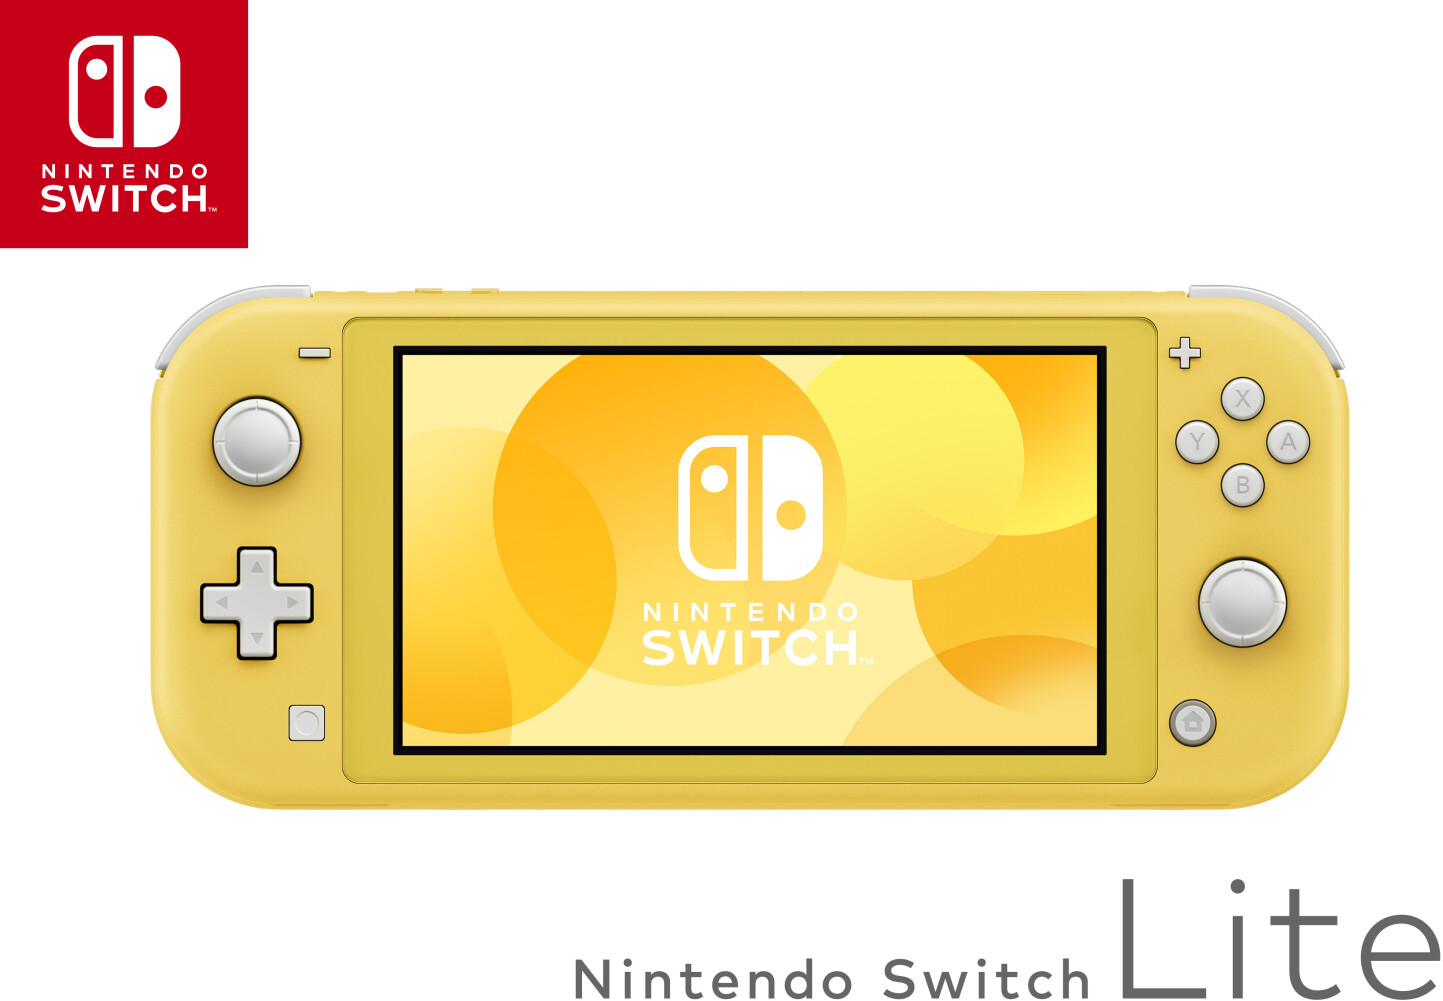 Consoles Nintendo Switch - Paiement en plusieurs